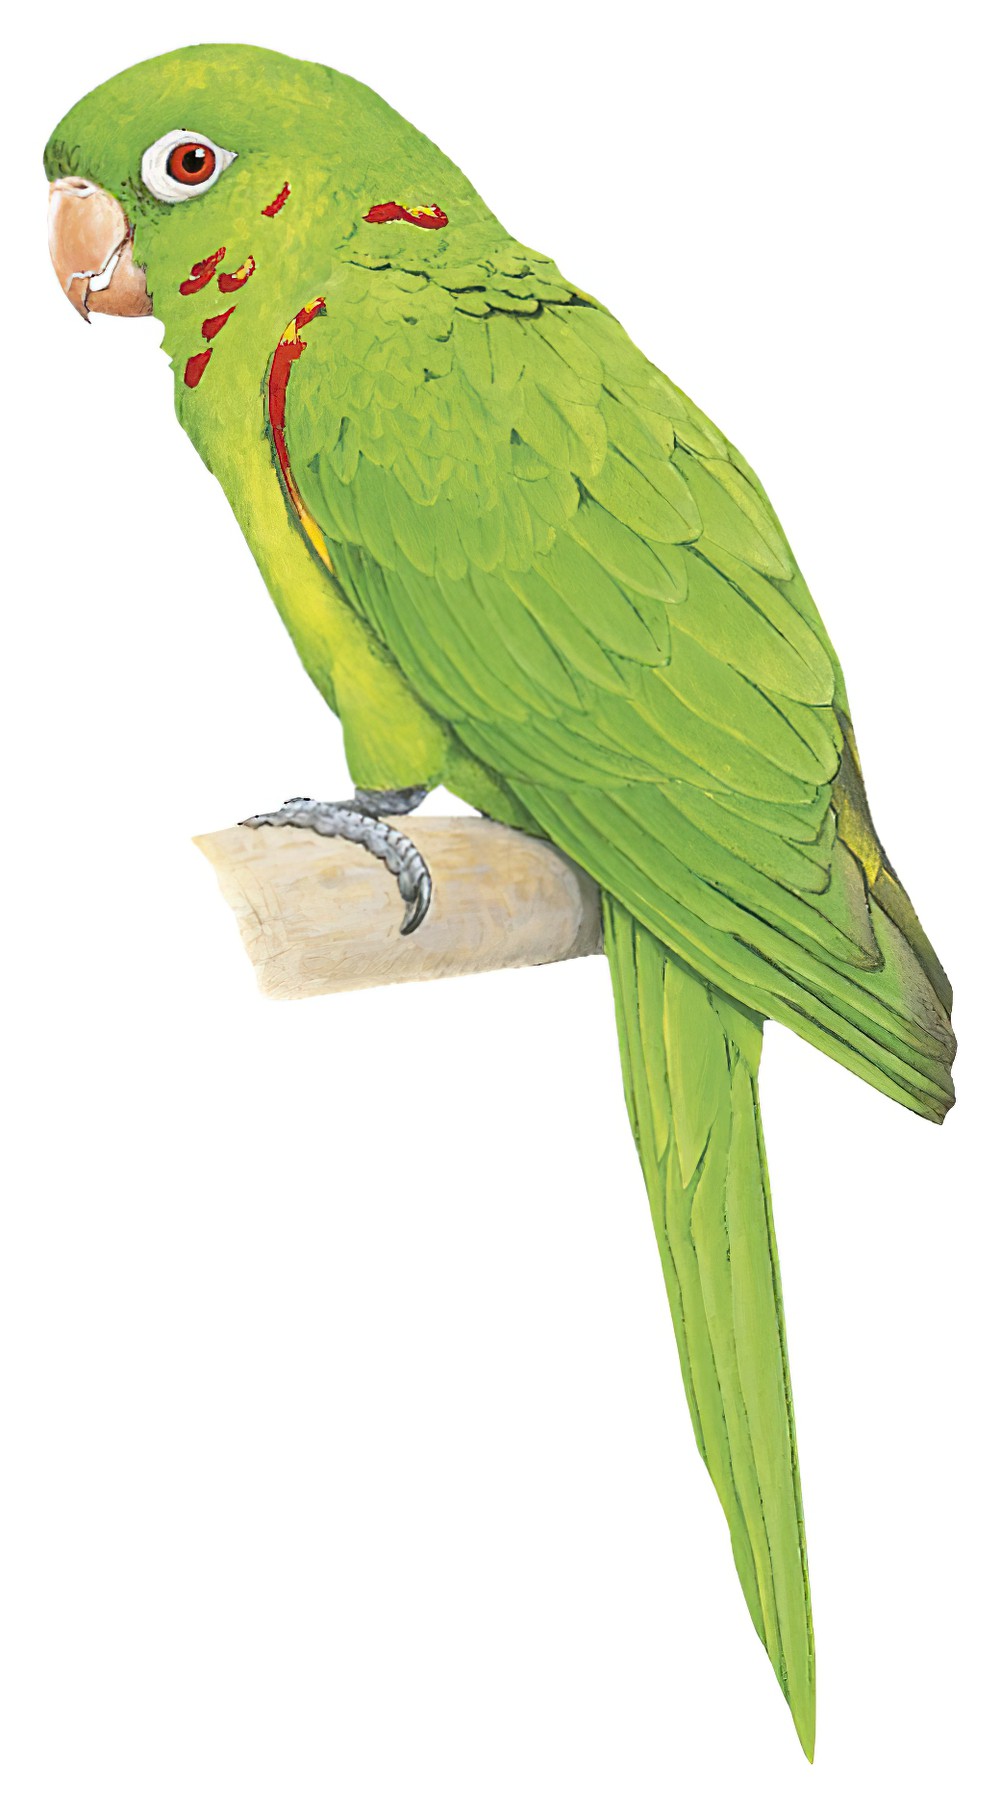 White-eyed Parakeet / Psittacara leucophthalmus